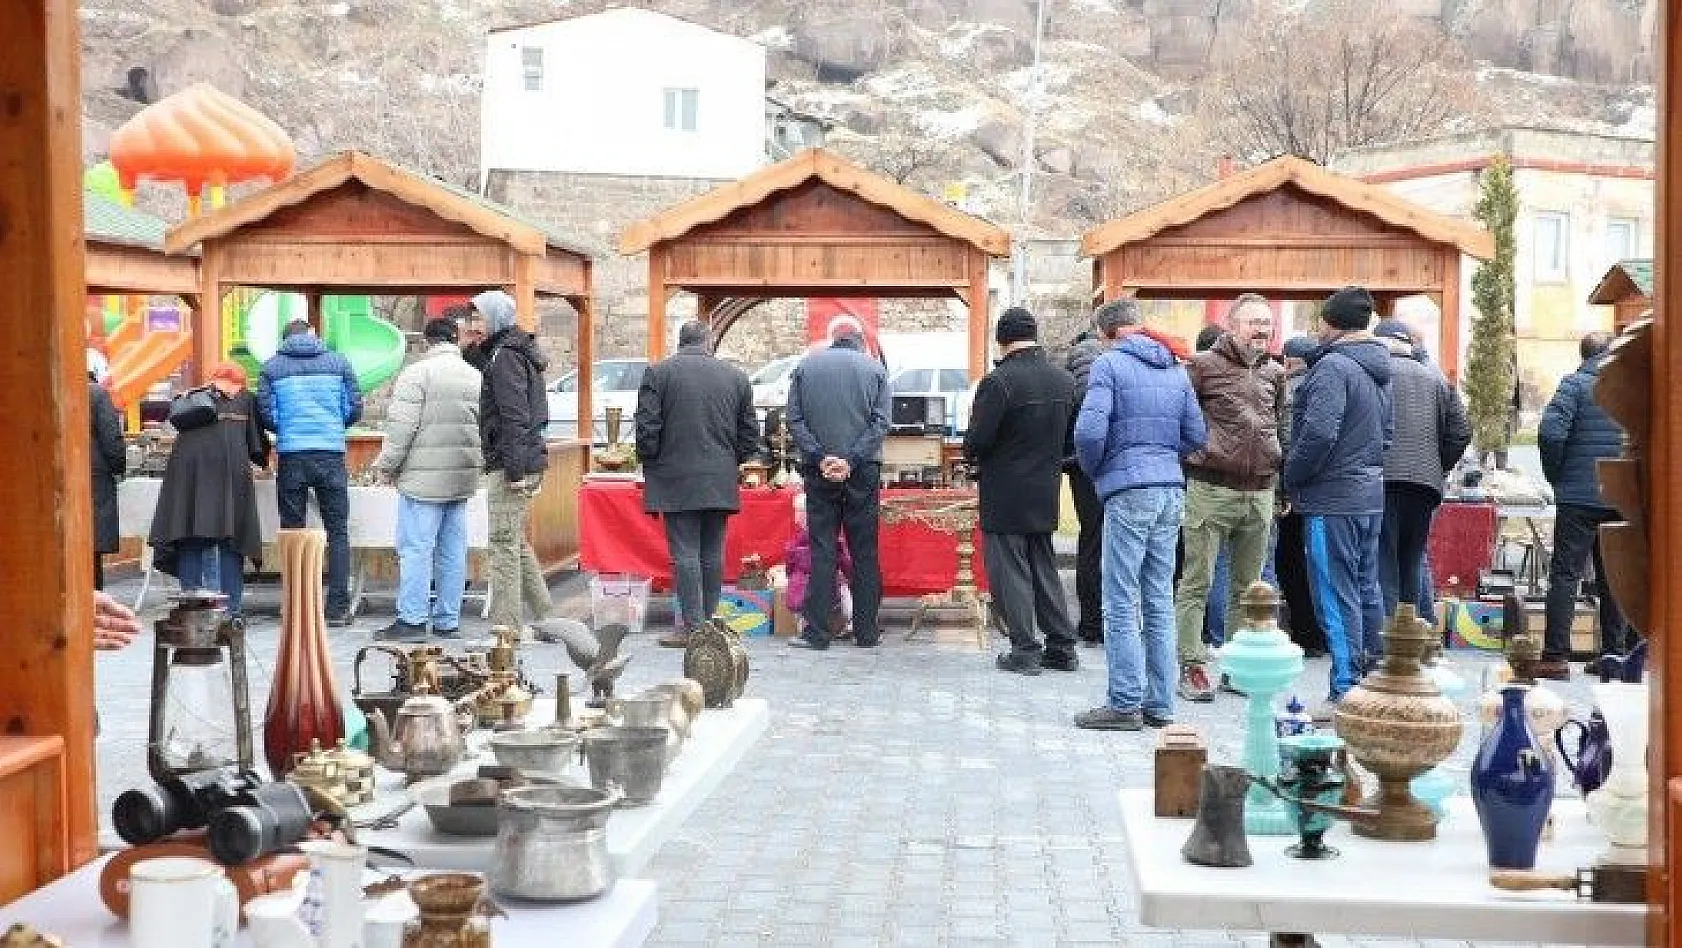 Talas Antika Pazarı yeniden açılıyor